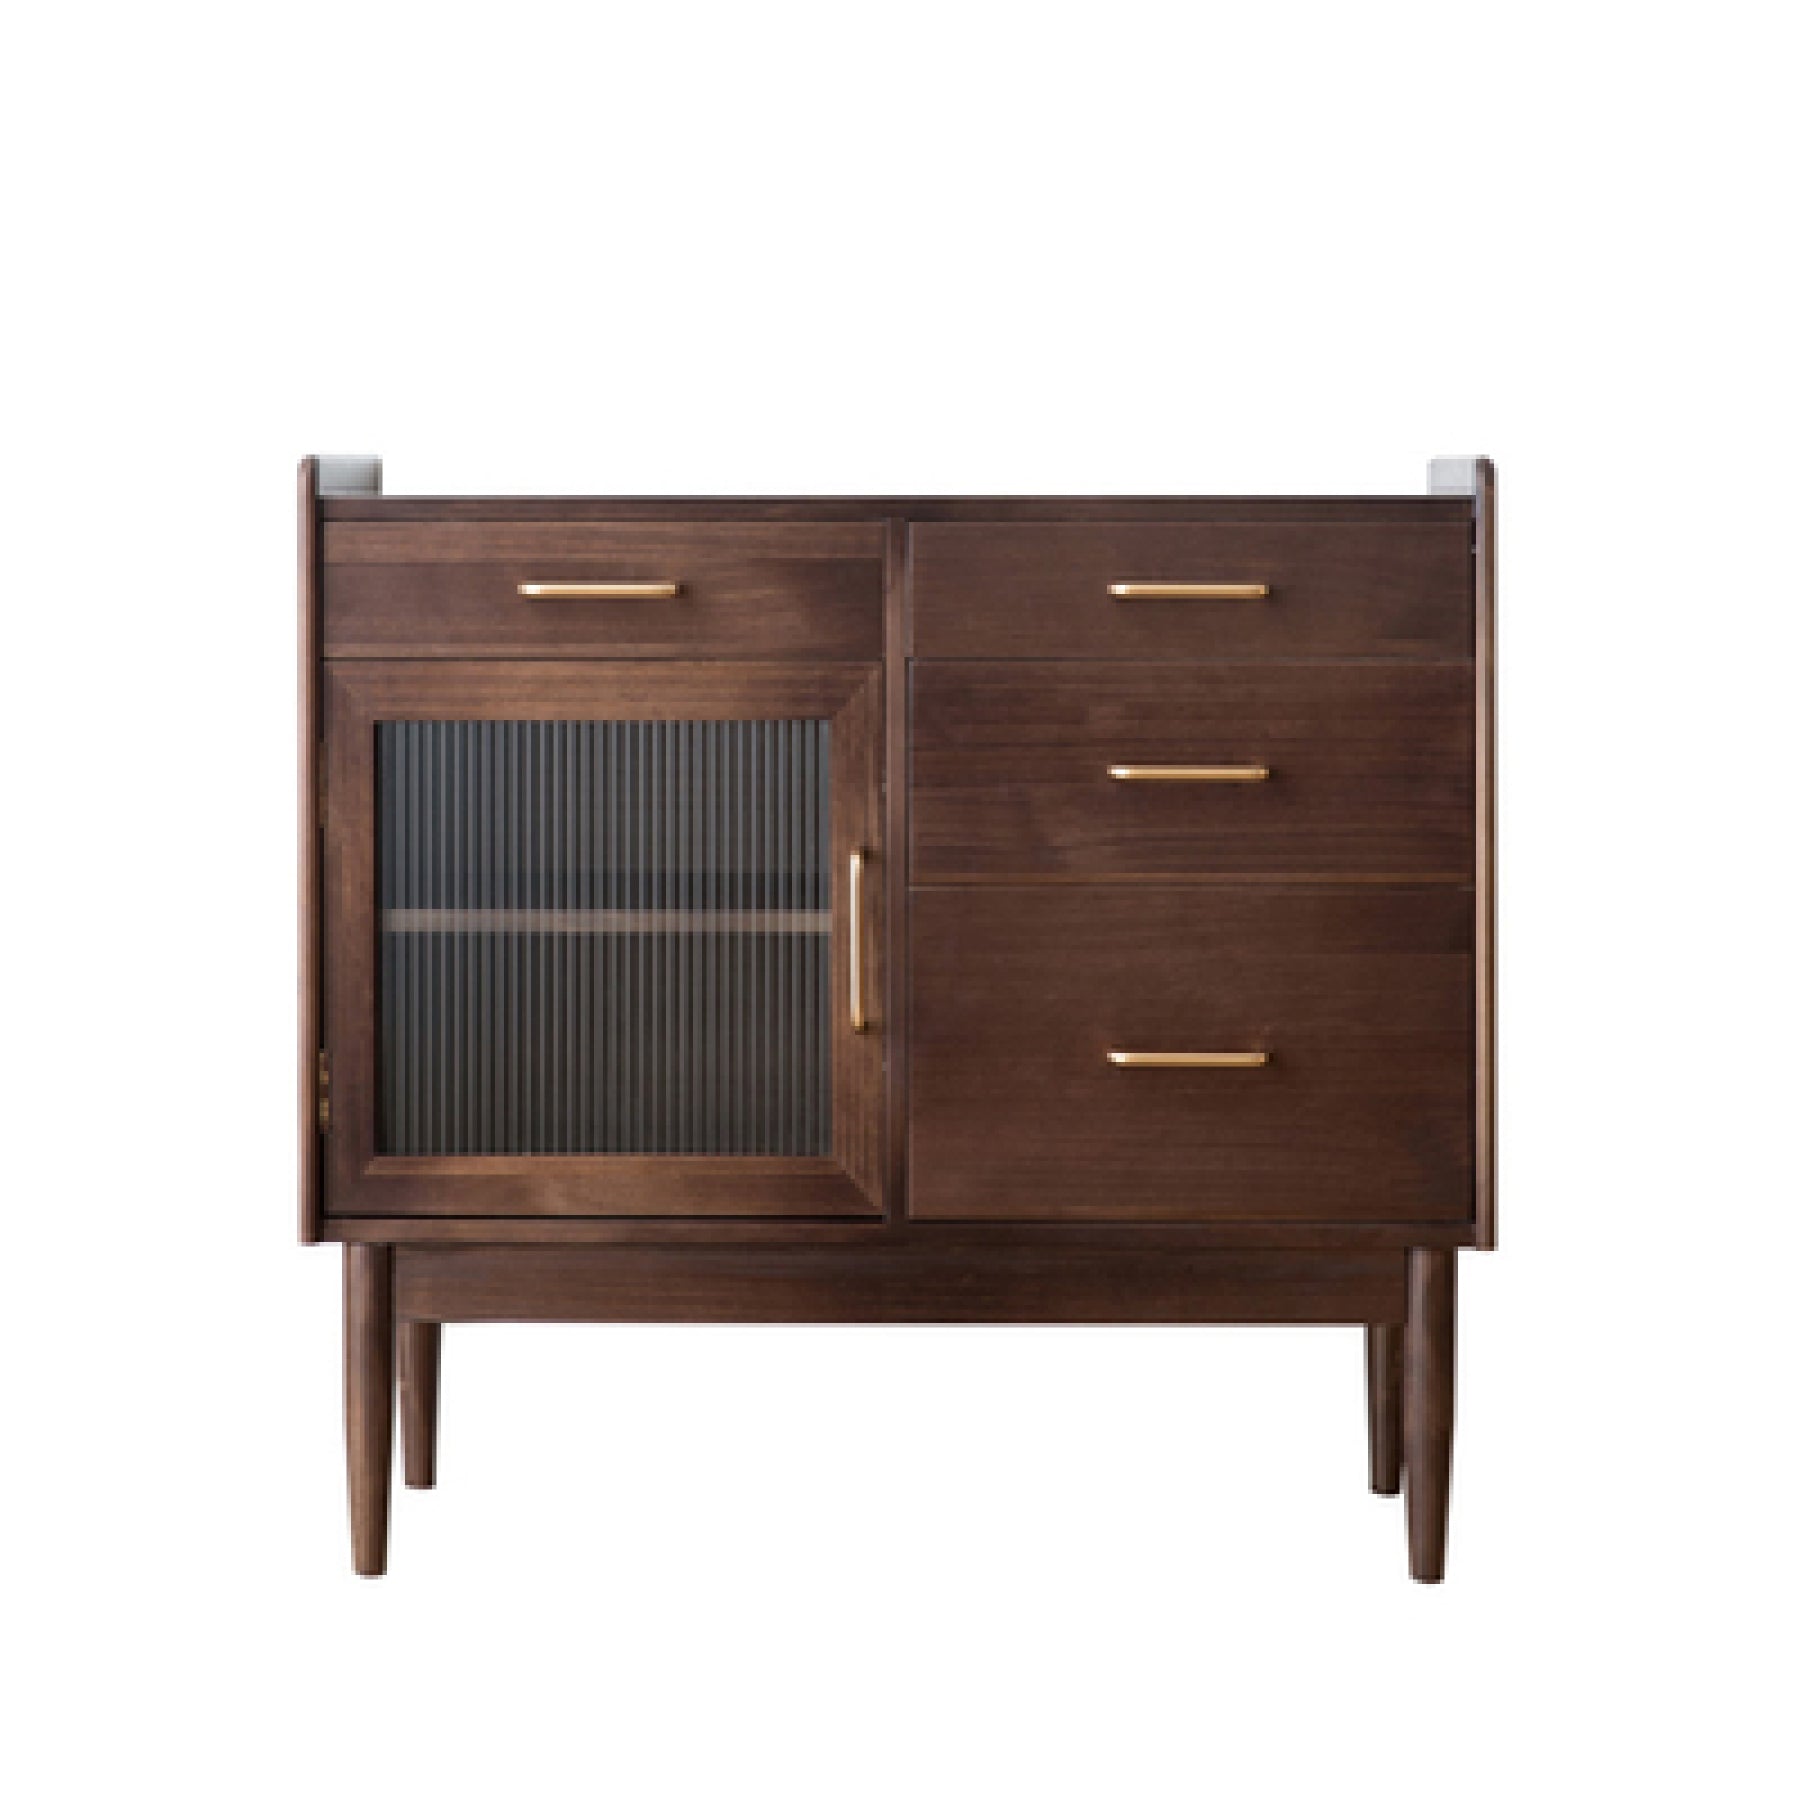 Tom Pine Wood Kitchen Storage Cabinet III